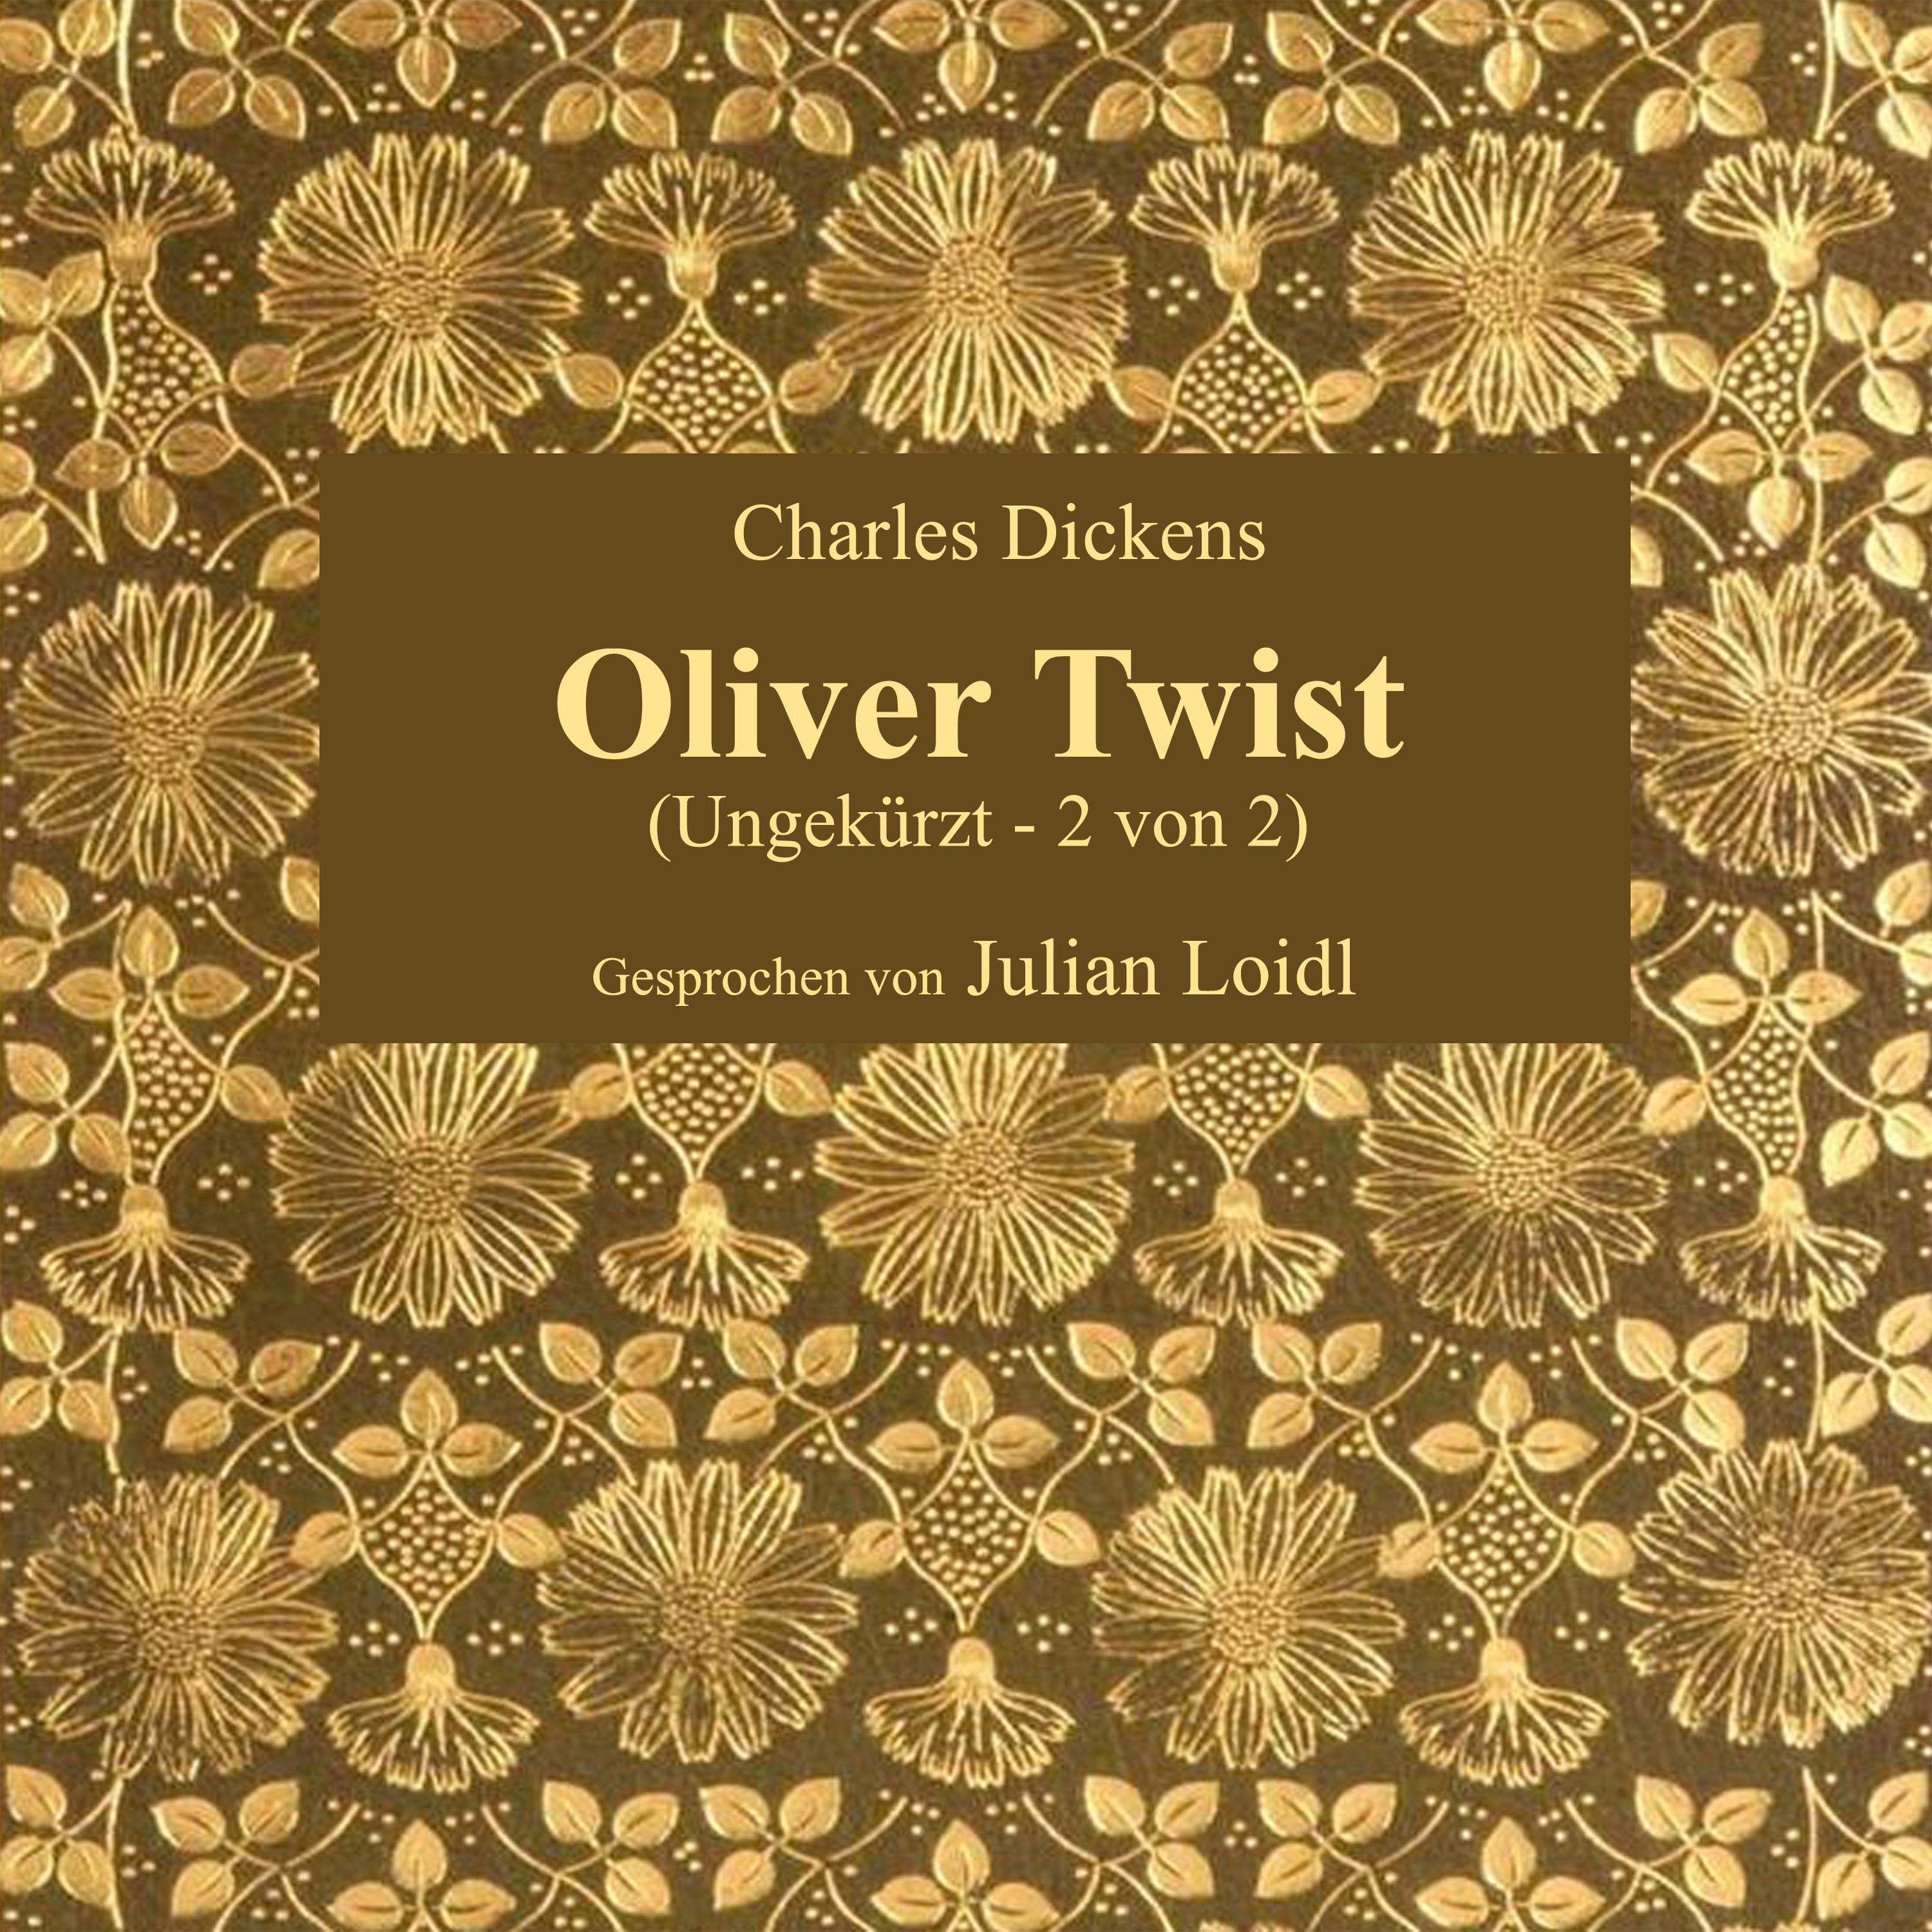 Kapitel 51: Oliver Twist (Teil 9)